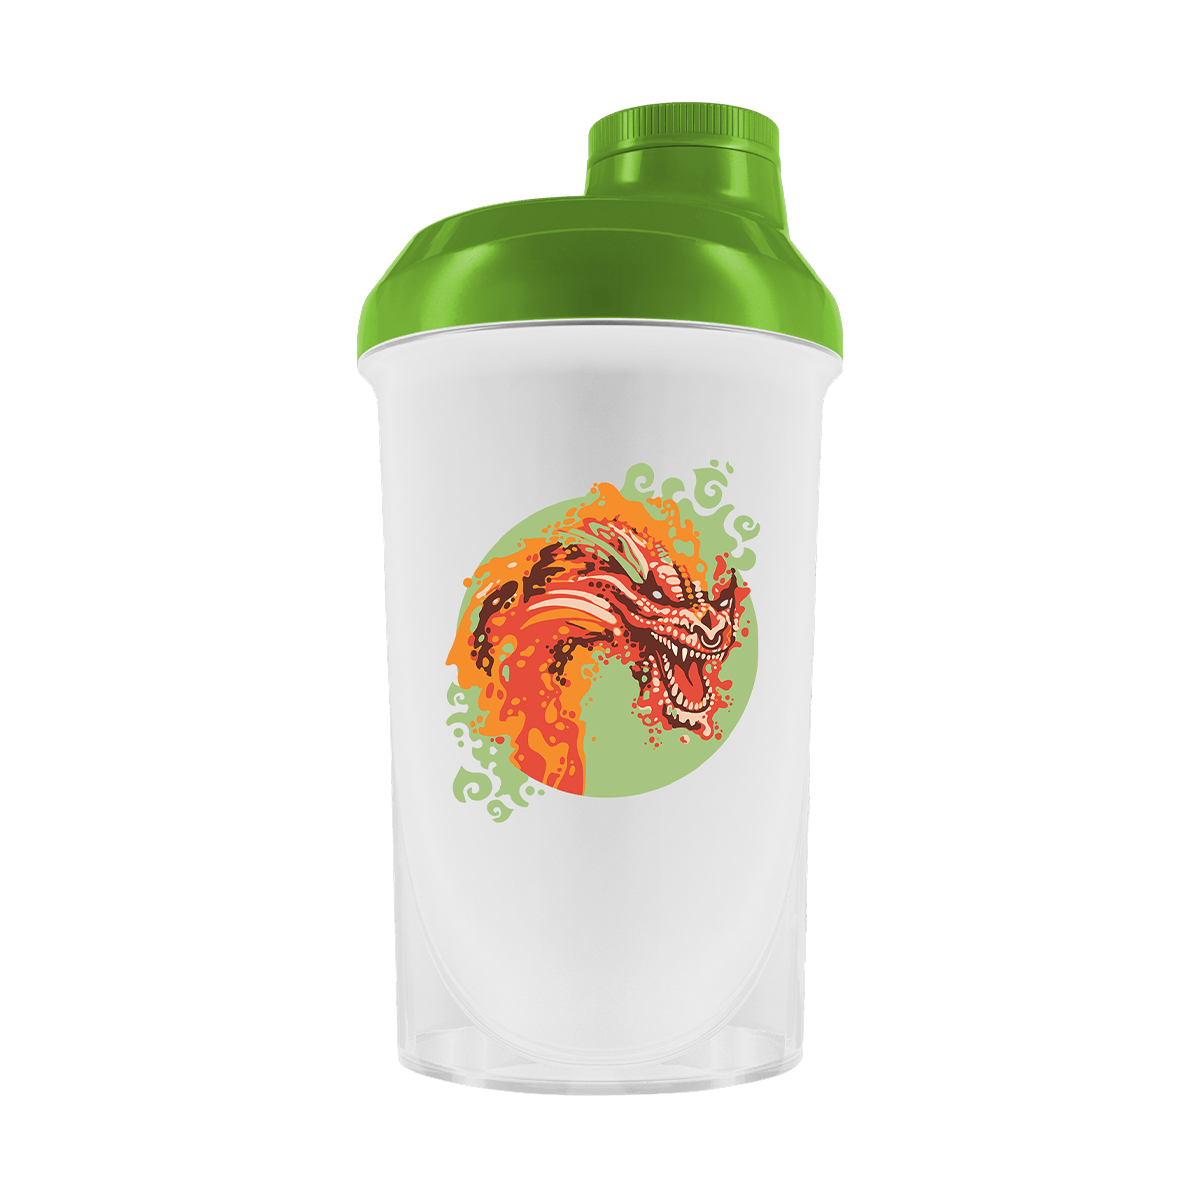 Just Legends Gratis Shaker "Graffiti Dragon" | Funktionaler, veganer Free Gift auf Pulverbasis ohne Zucker, mit wenig Kalorien, vielen Vitaminen und natürlichen Aromen.